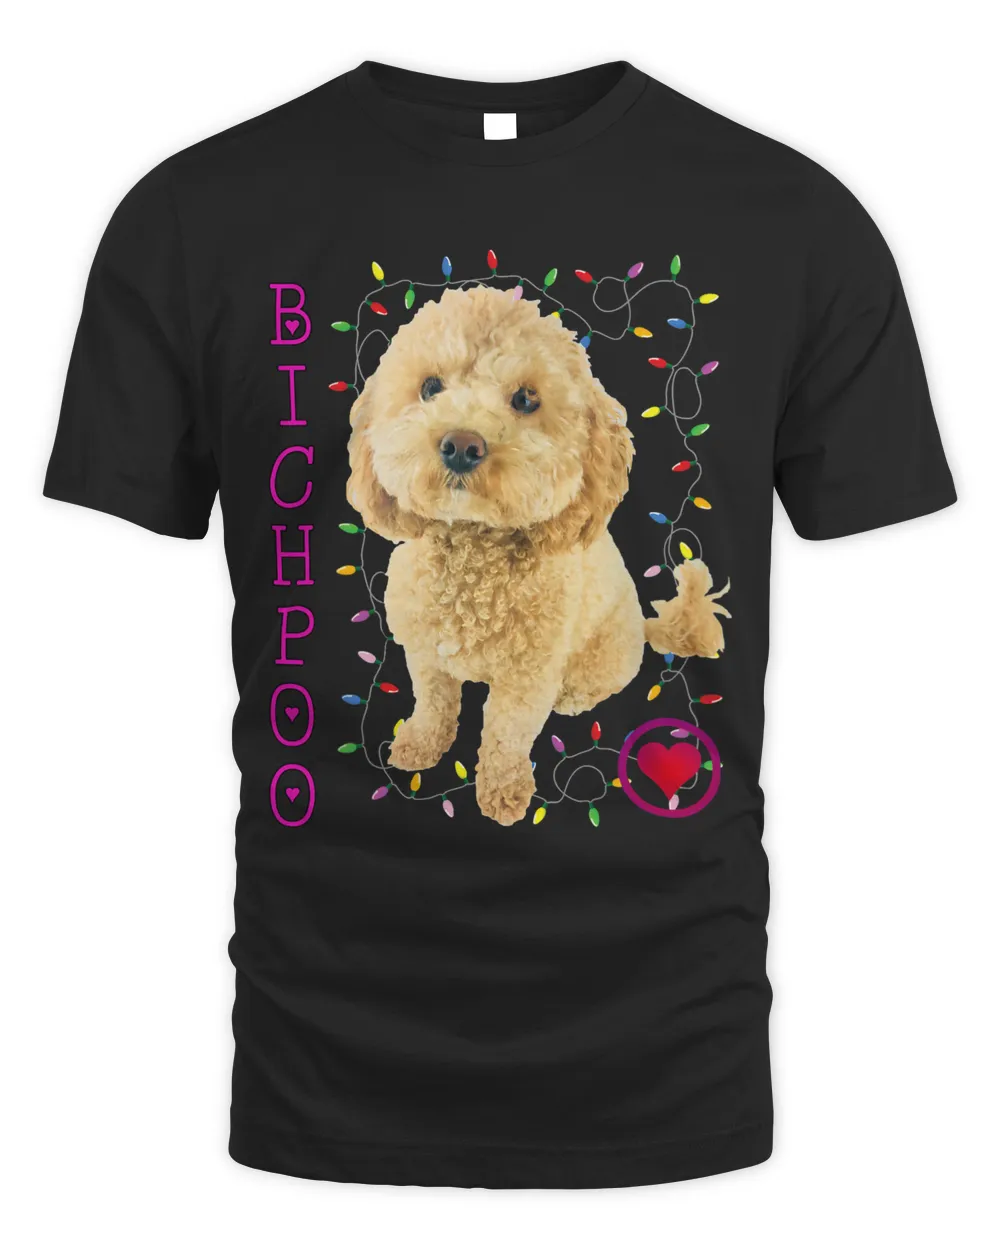 Bichpoo Puppy Dog Poodle cross Noodle Super cute Boodle 266